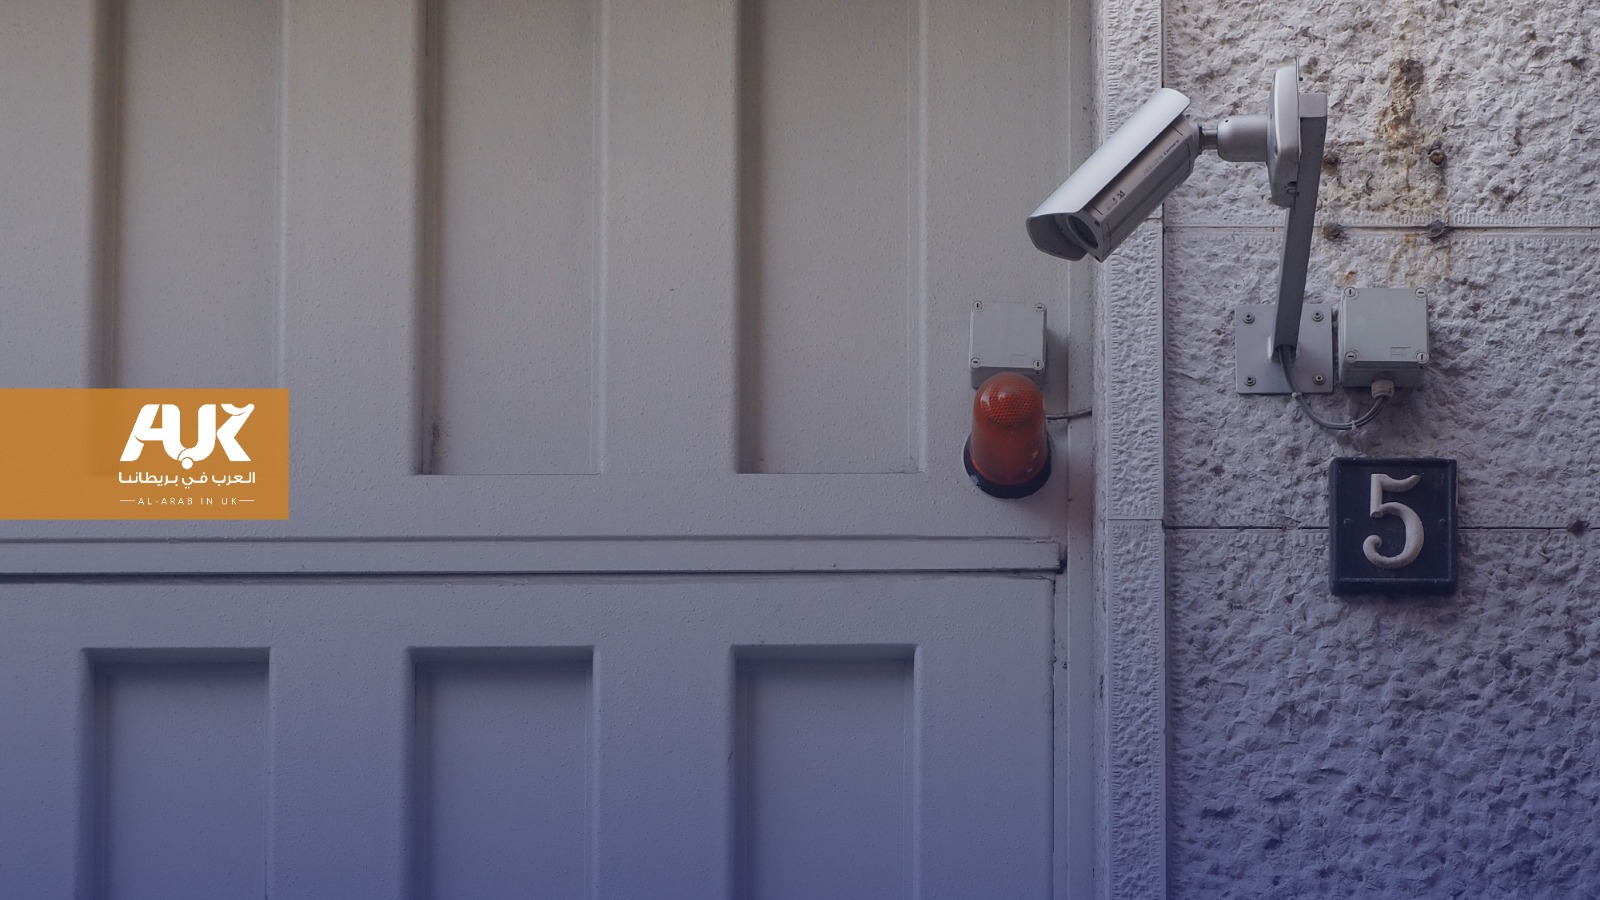 هل يعتبر استخدام جرس مع كاميرا على باب المنزل قانونيًا في بريطانيا؟